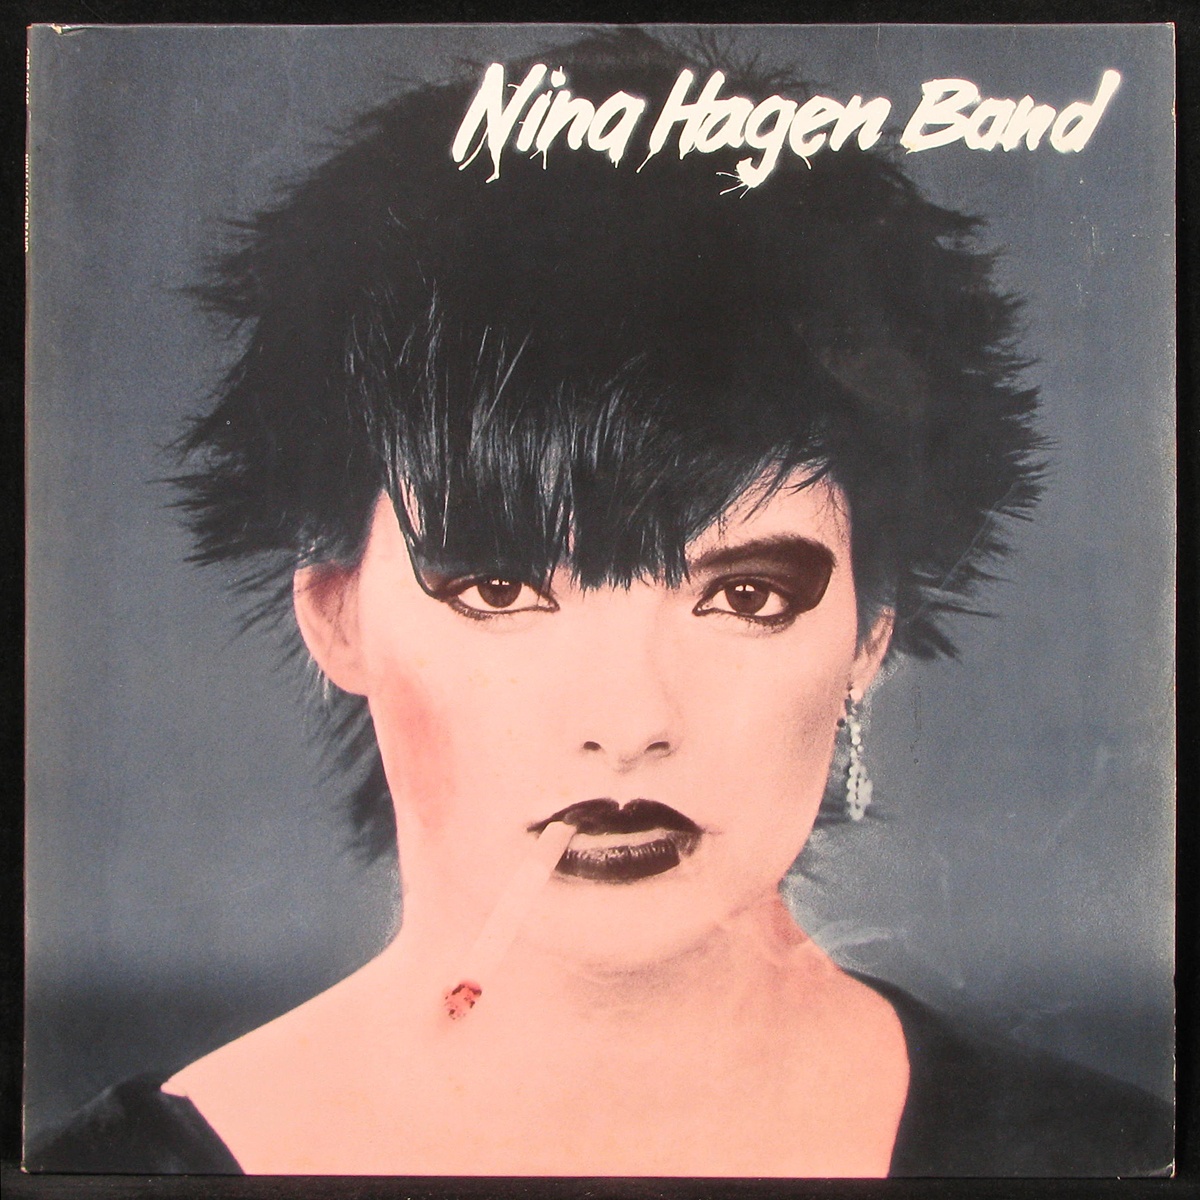 LP Nina Hagen Band — Nina Hagen Band (+ booklet) фото